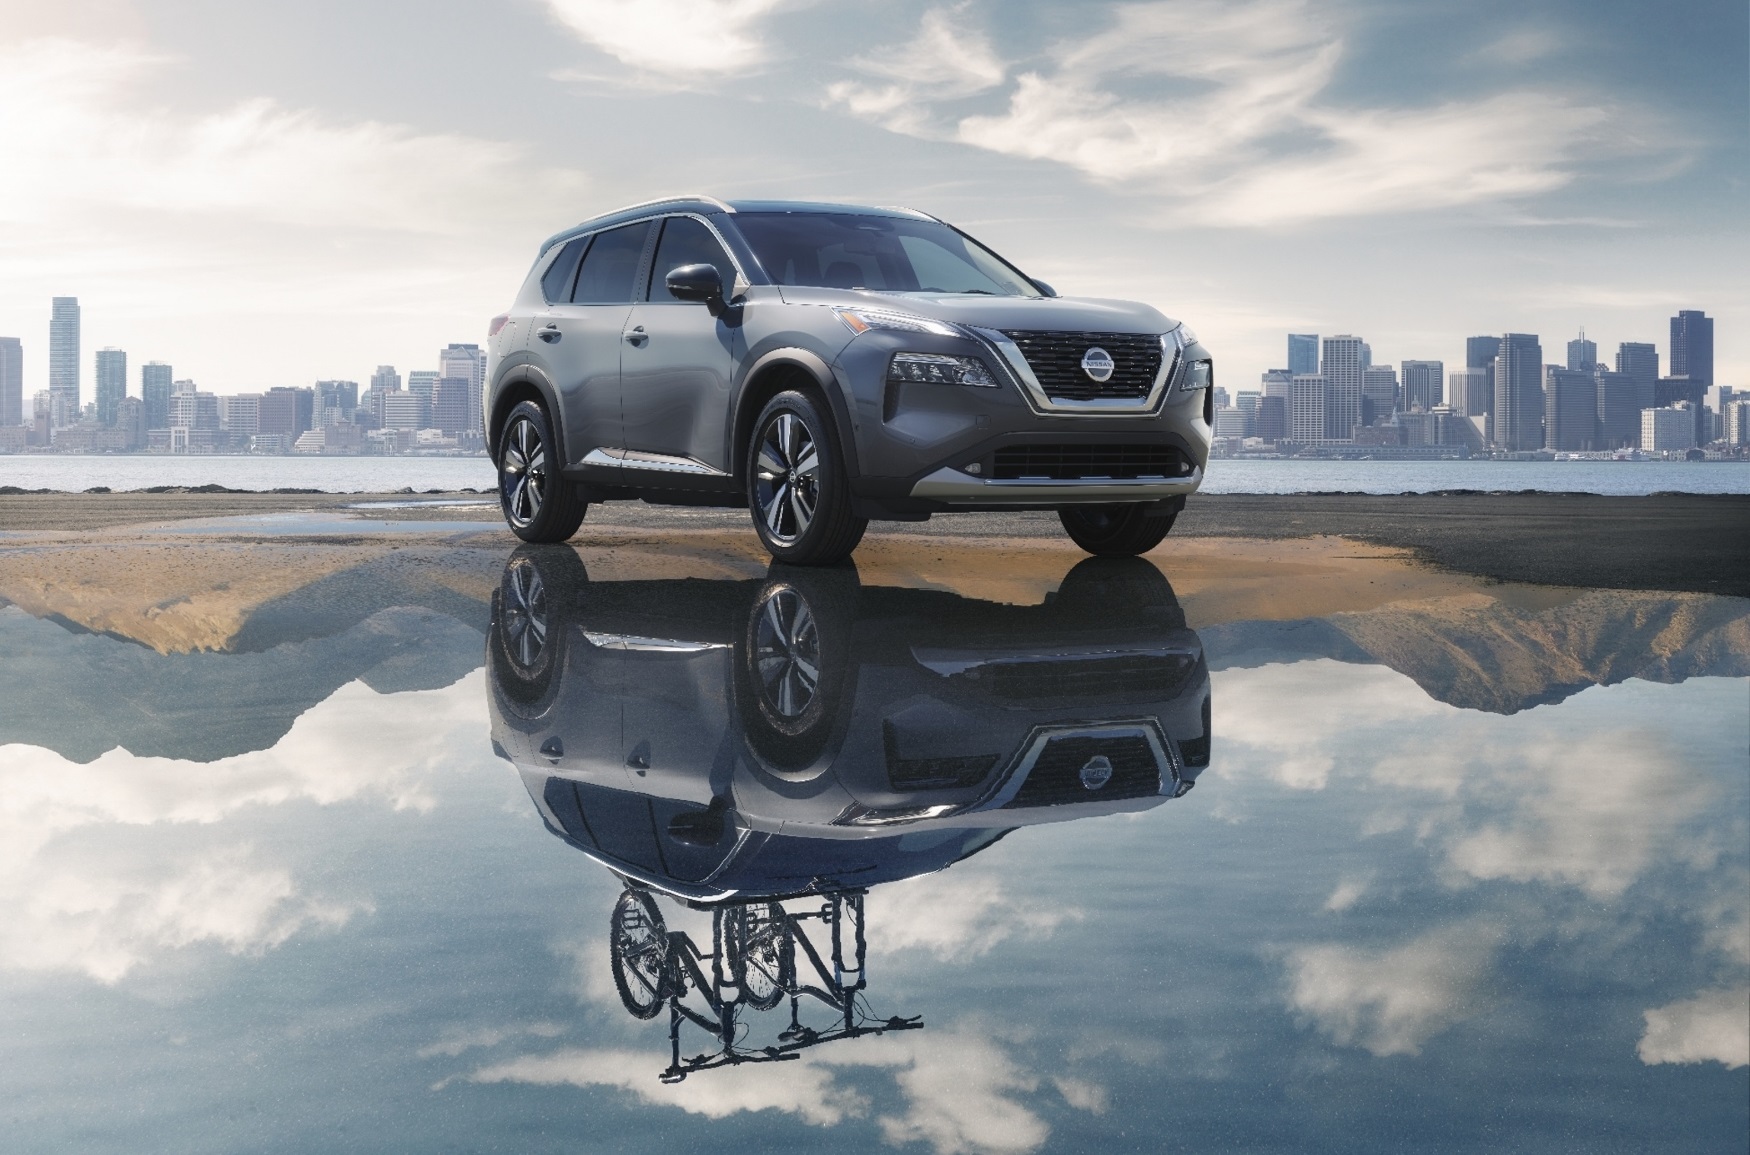 Nissan Rogue ukazuje, ako bude vyzerať nový X-Trail